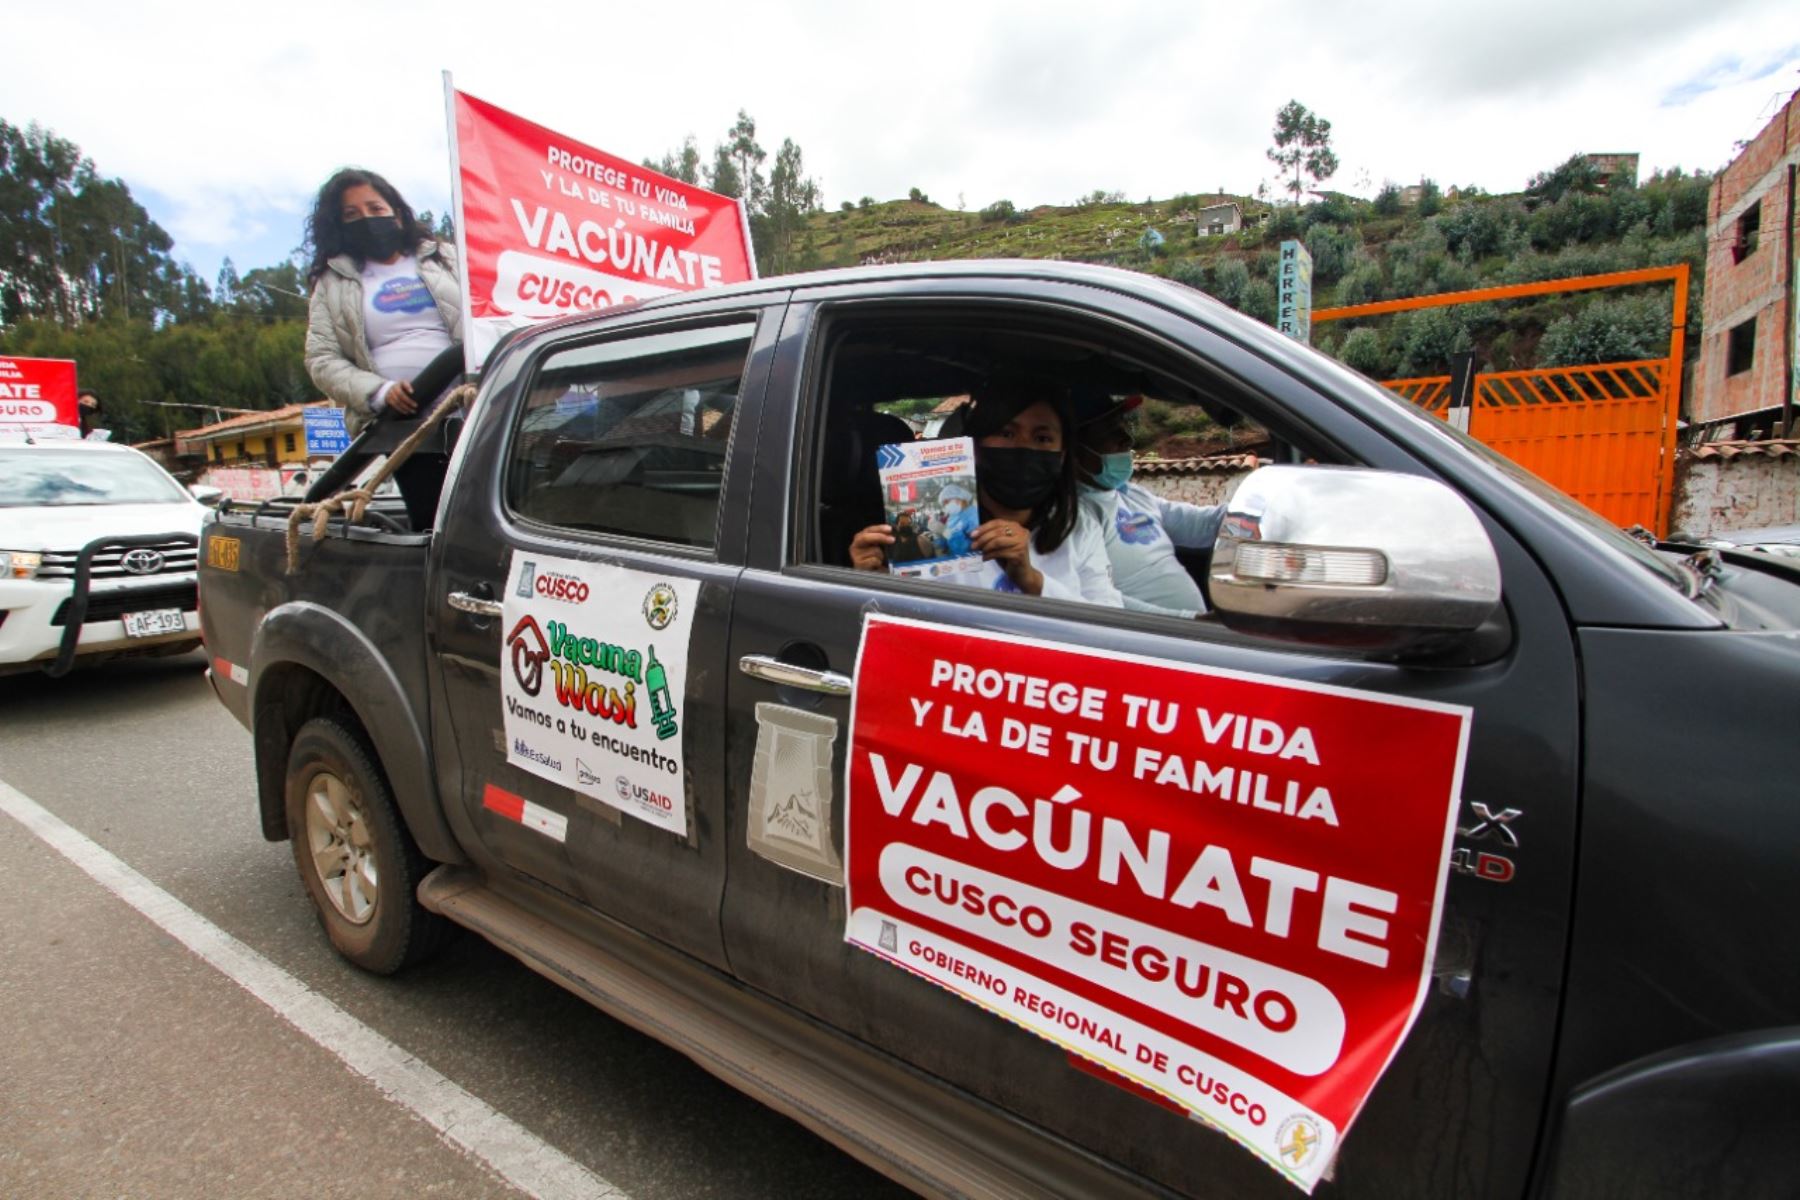 En la caravana participaron al menos 60 vehículos del gobierno regional del Cusco. Foto: ANDINA/Difusión